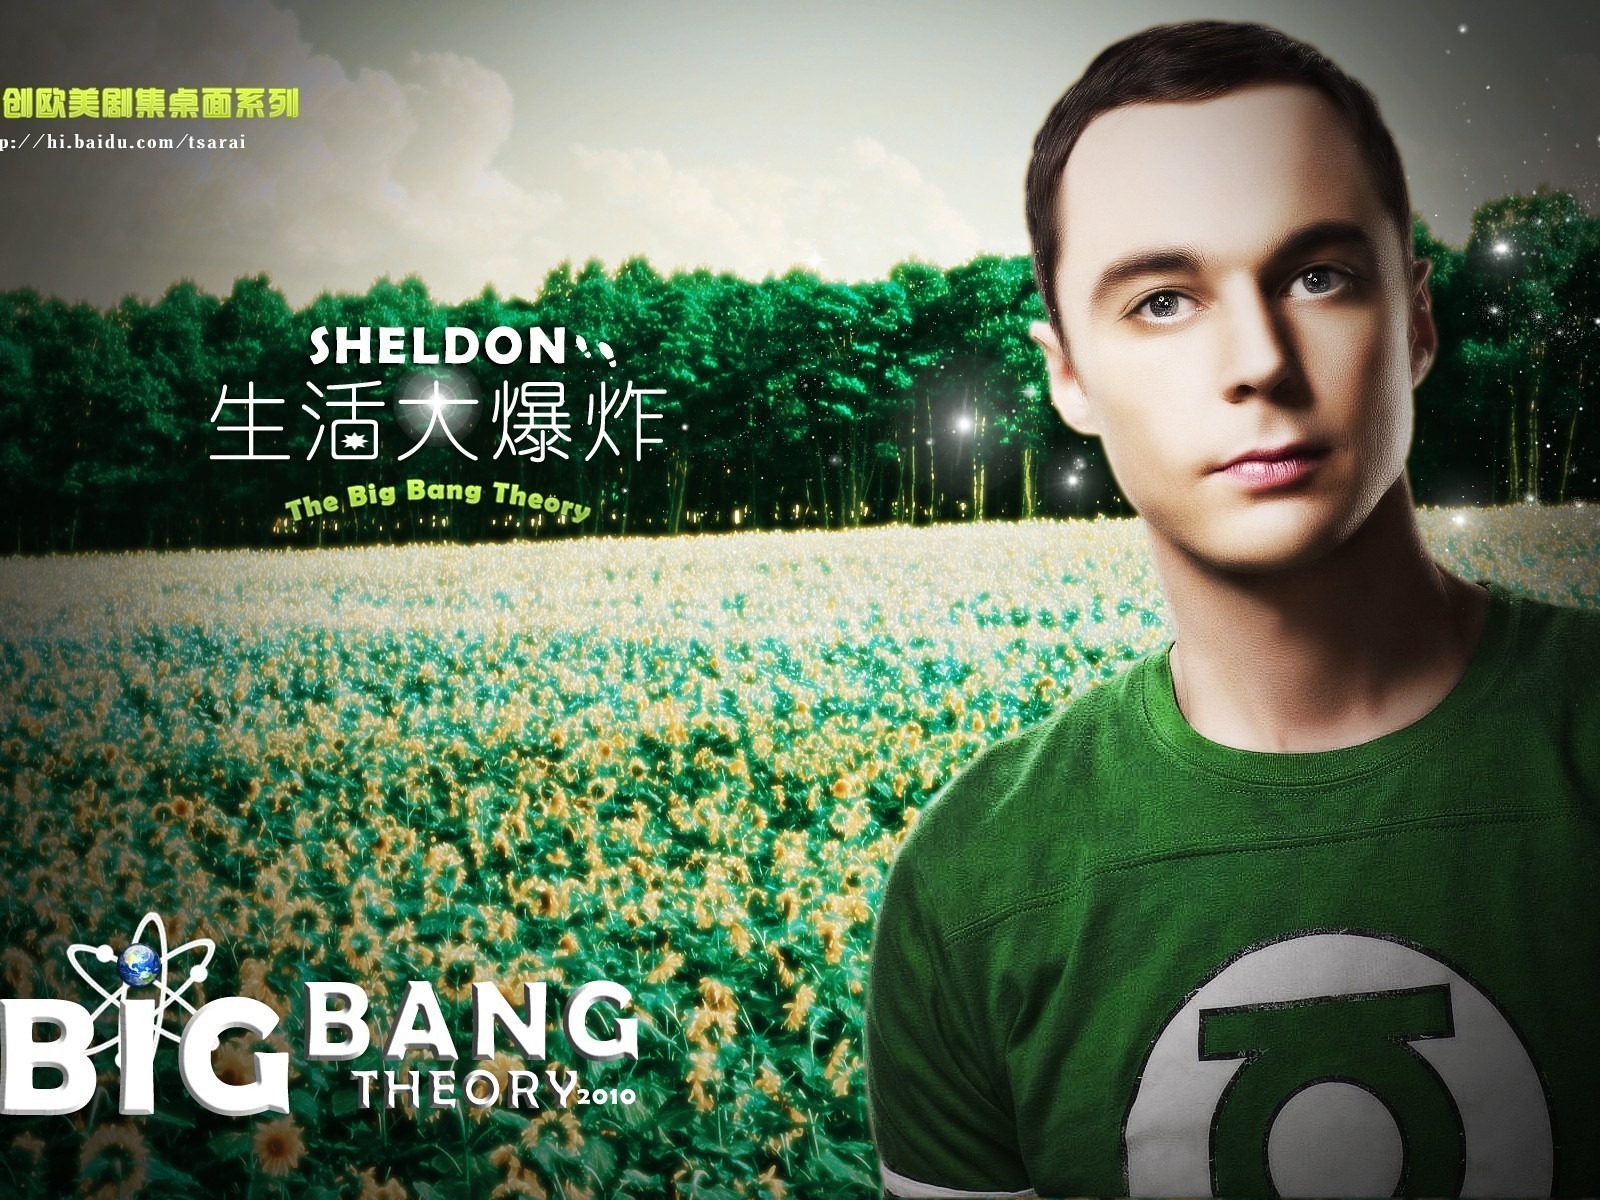 The Big Bang Theory TV Series HD wallpapers #16 - 1600x1200